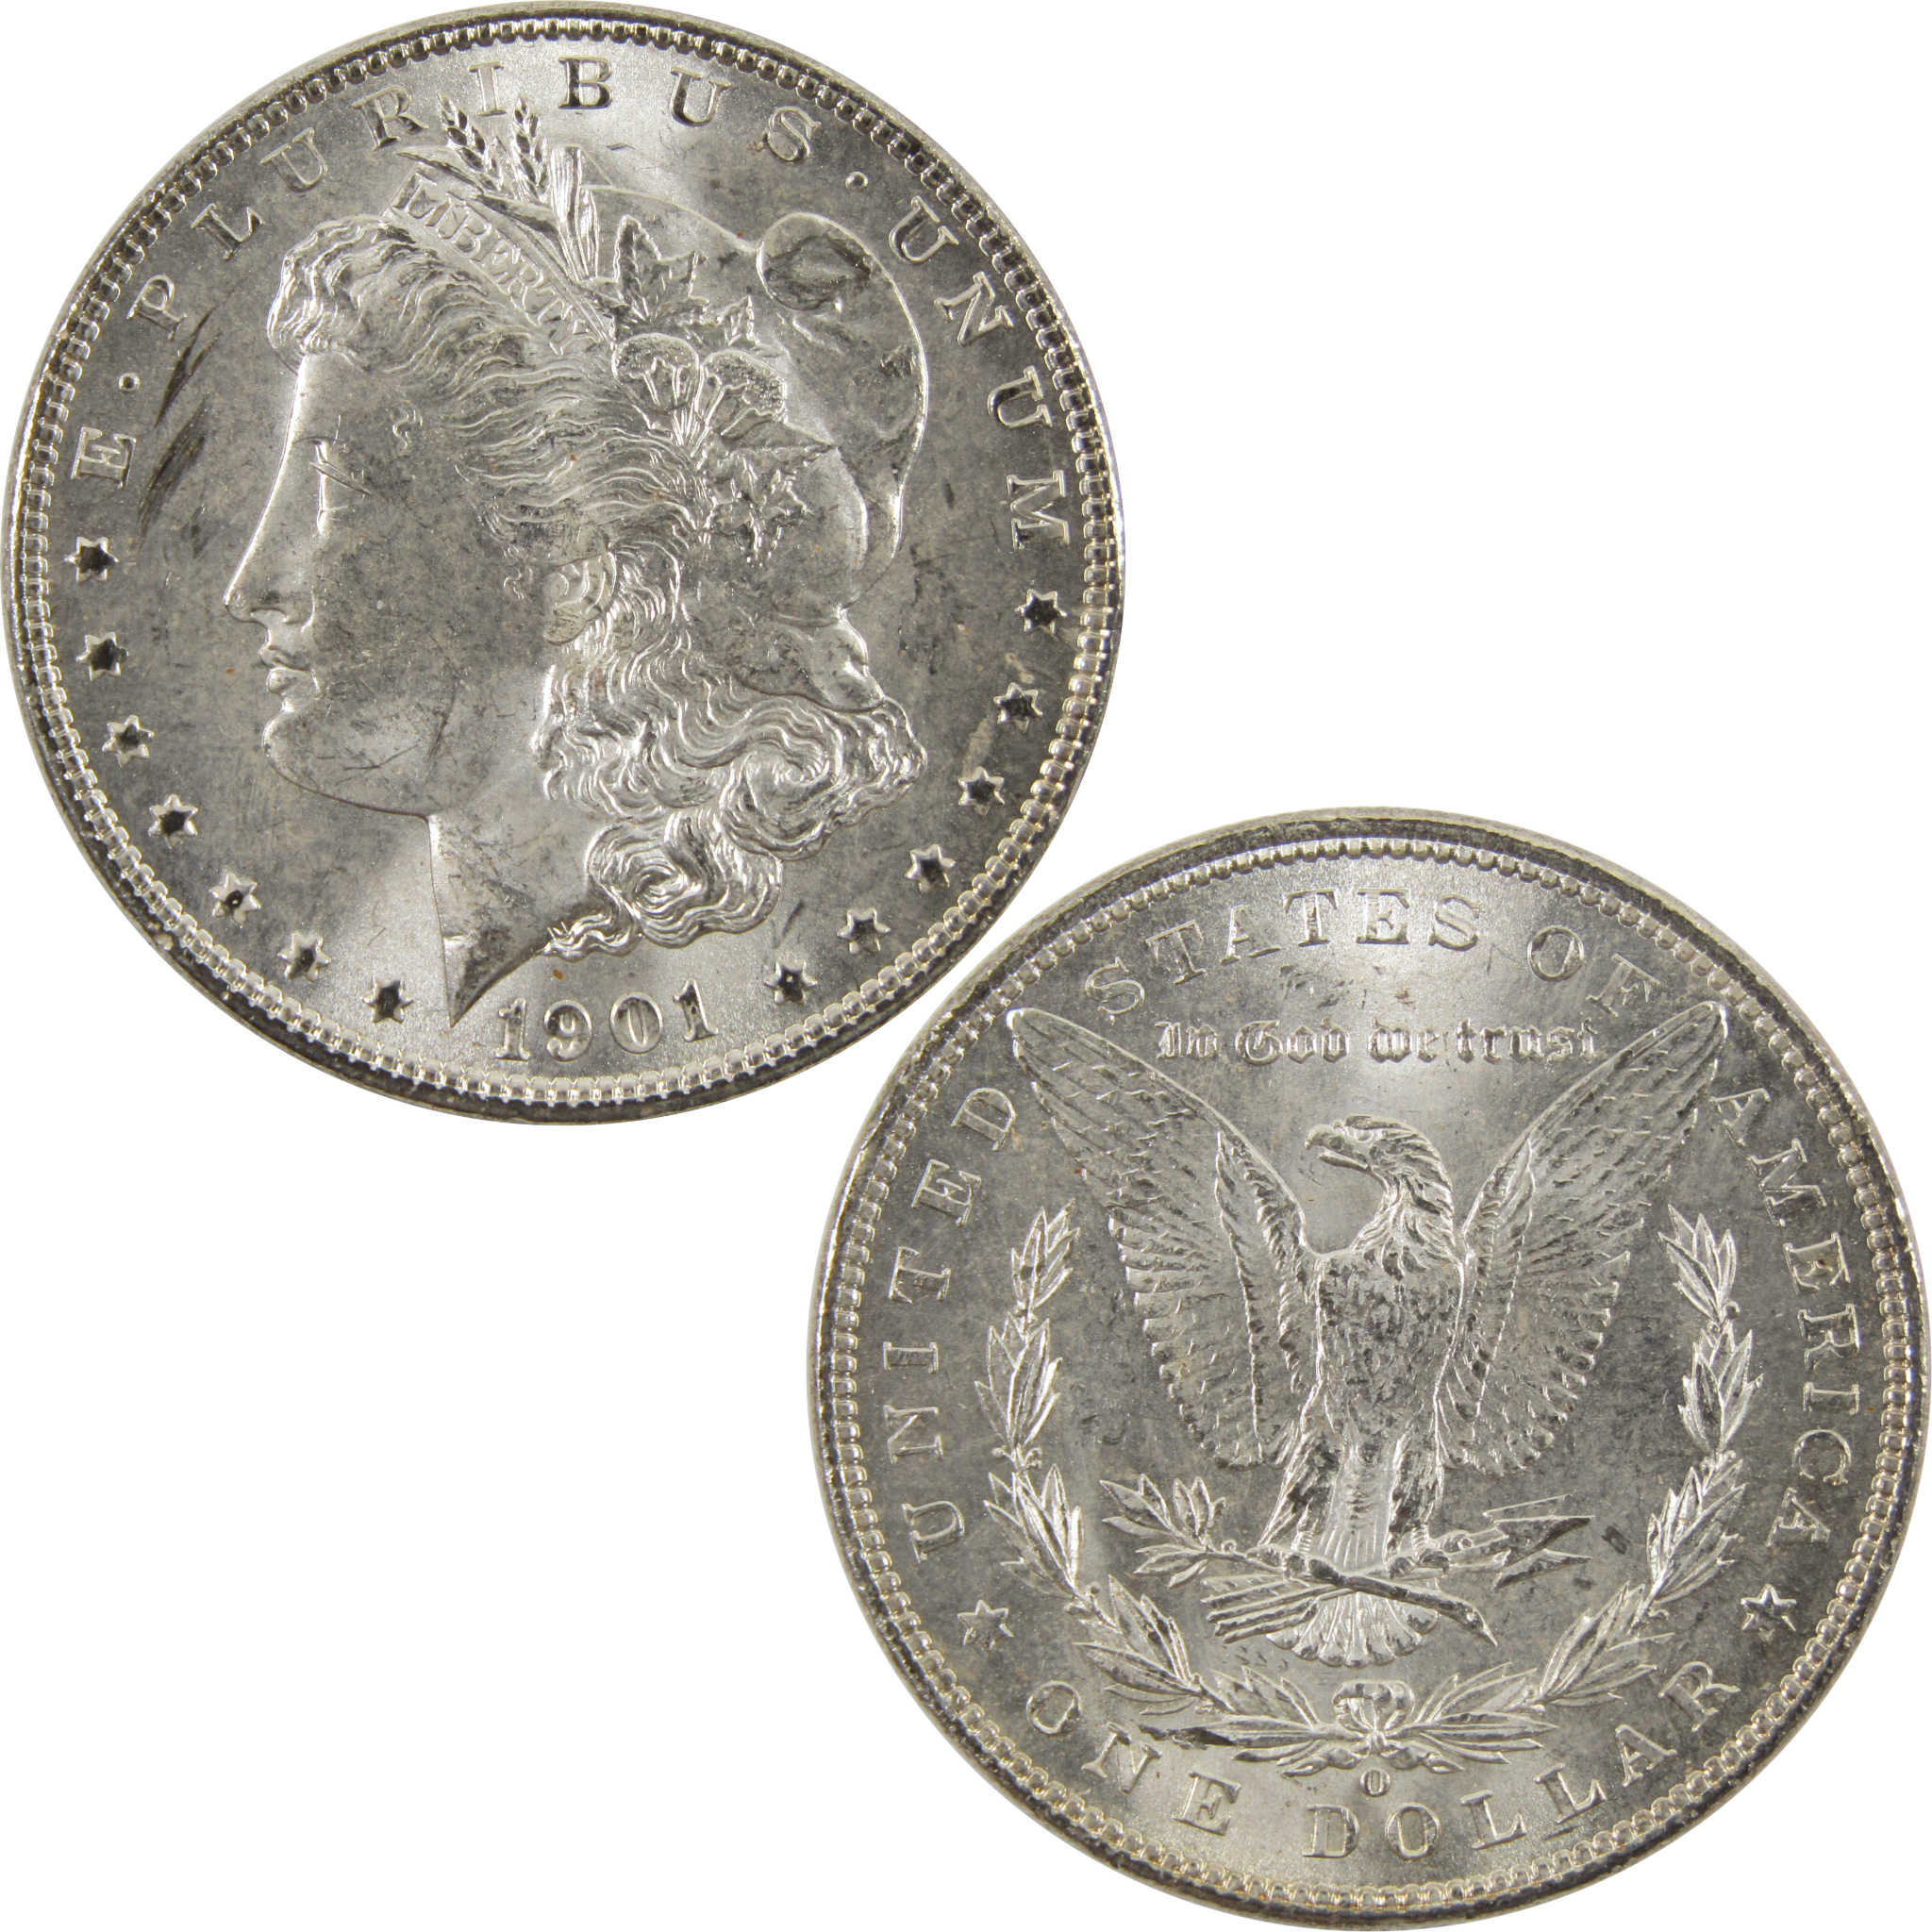 1901 O Morgan Dollar BU Uncirculated 90% Silver $1 Coin SKU:I10473 - Morgan coin - Morgan silver dollar - Morgan silver dollar for sale - Profile Coins &amp; Collectibles